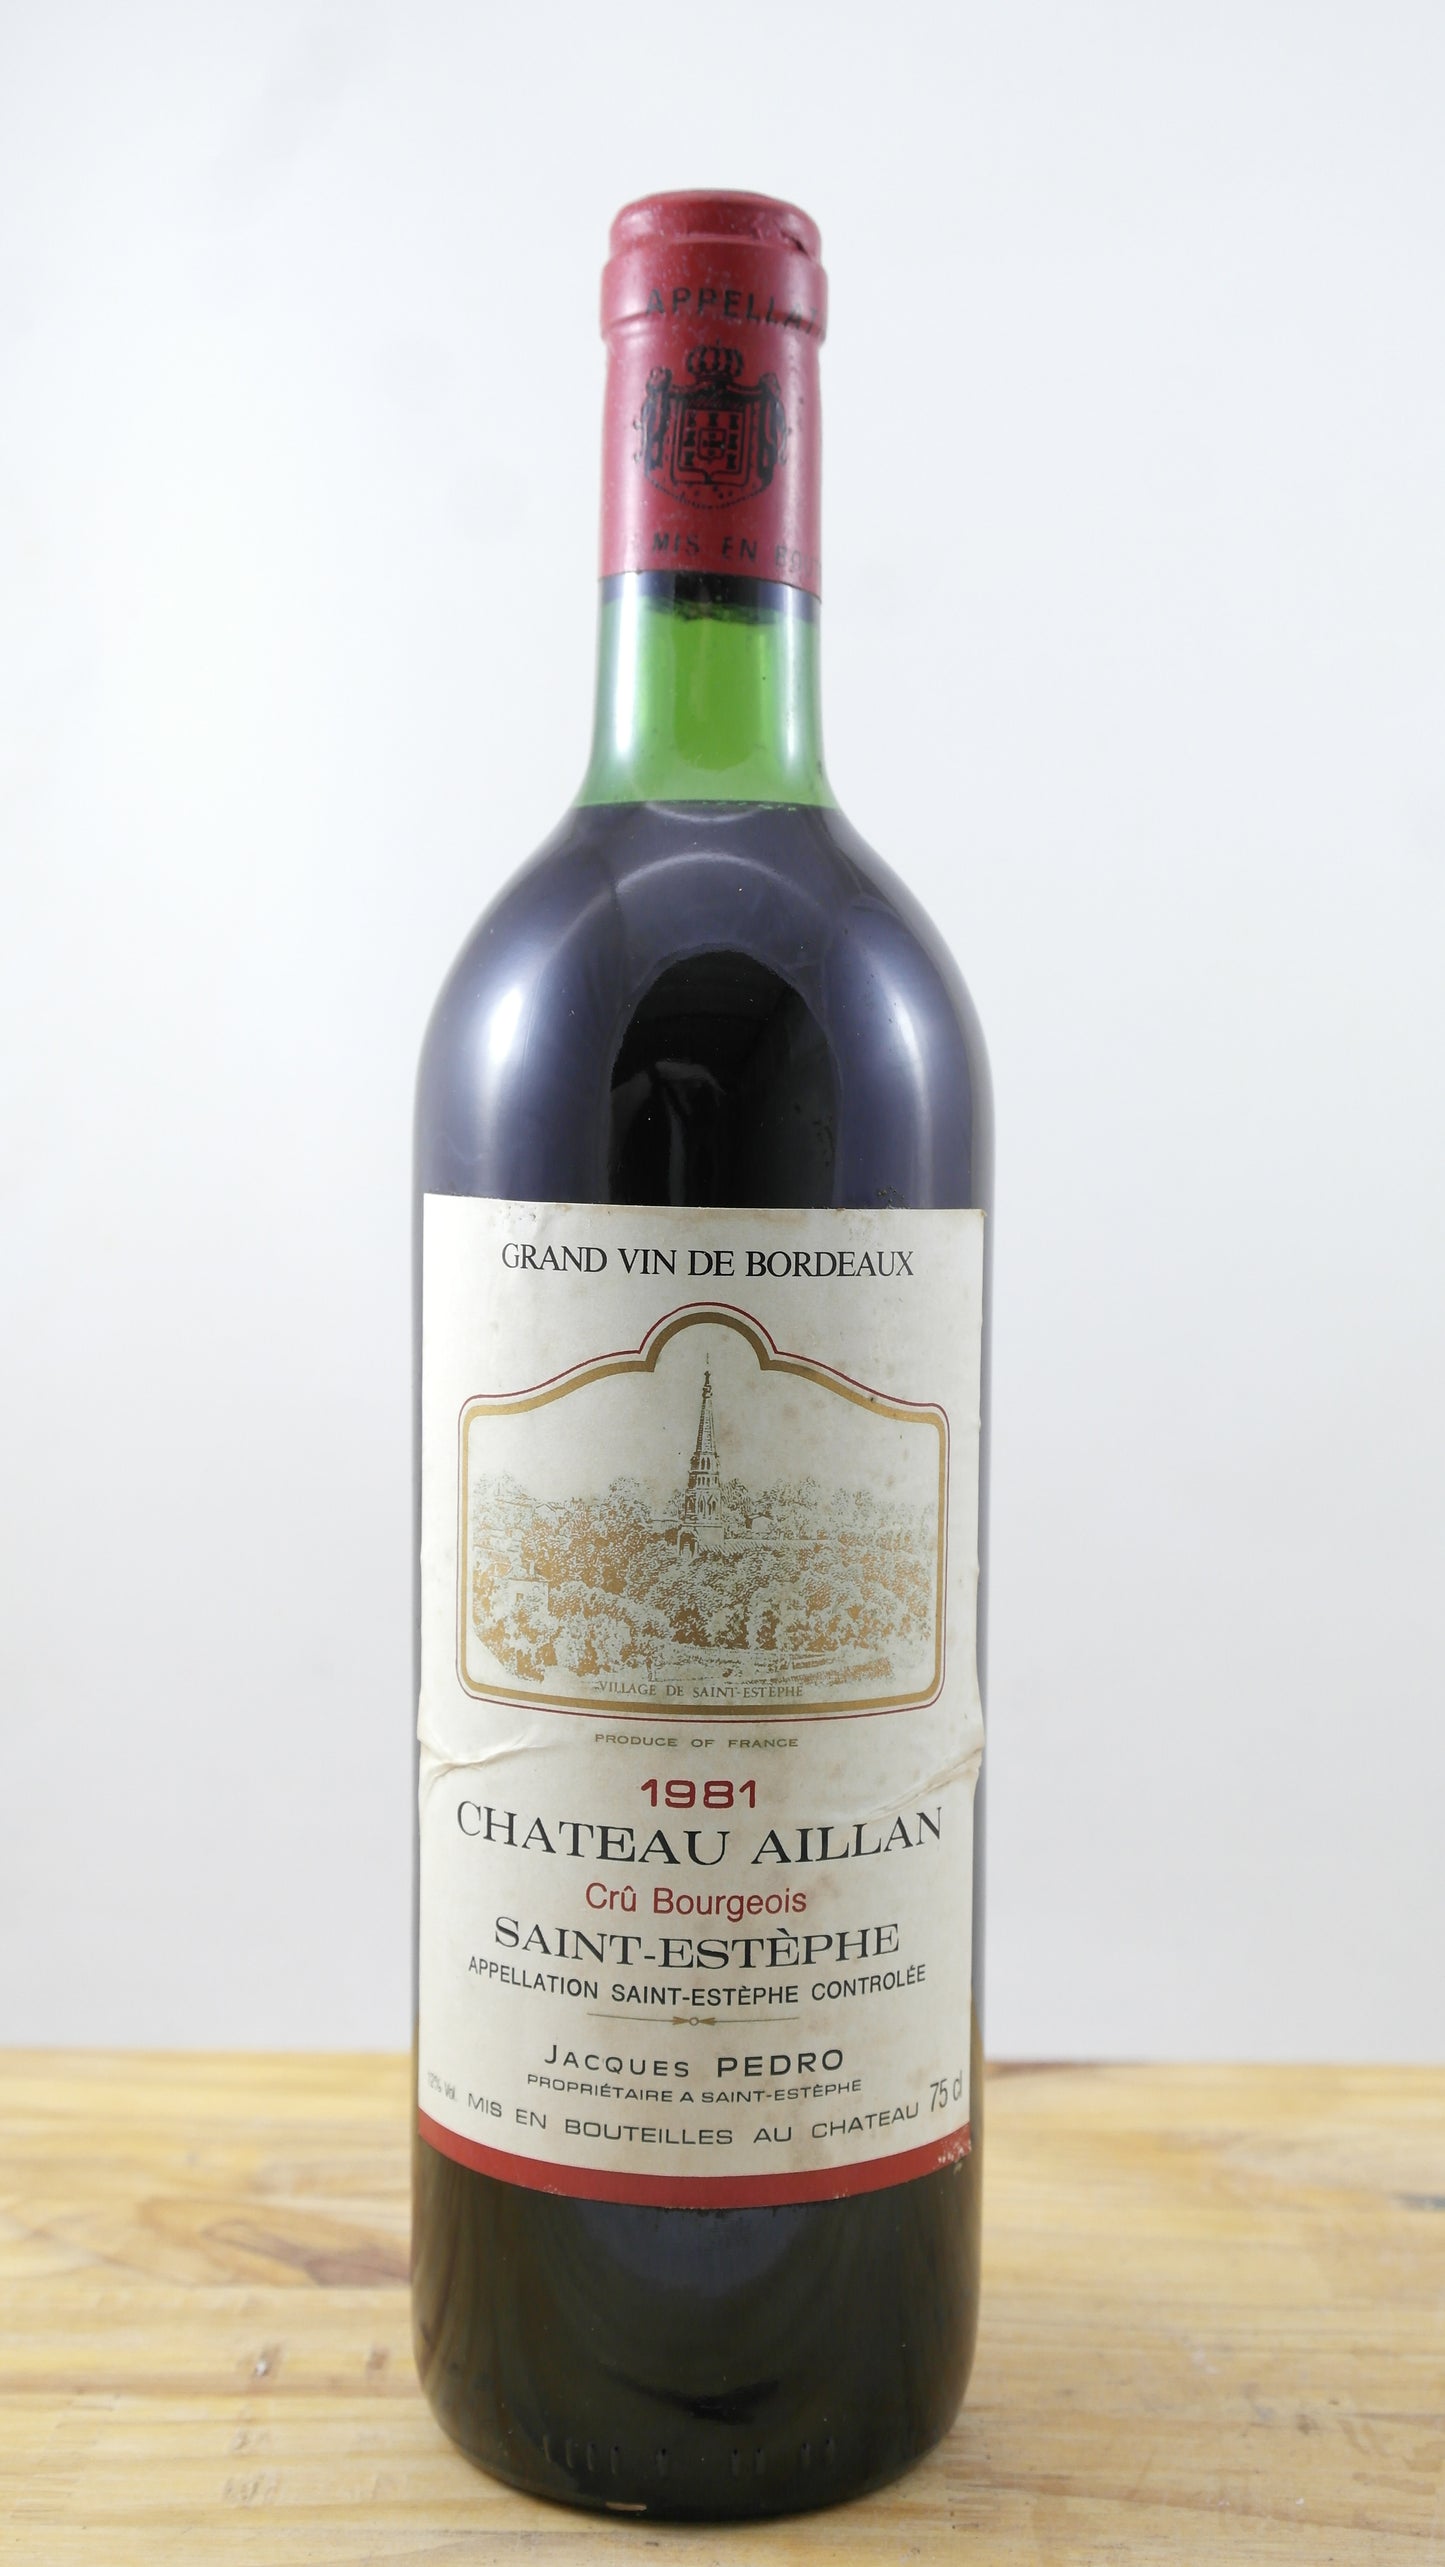 Château Aillan Vin 1981